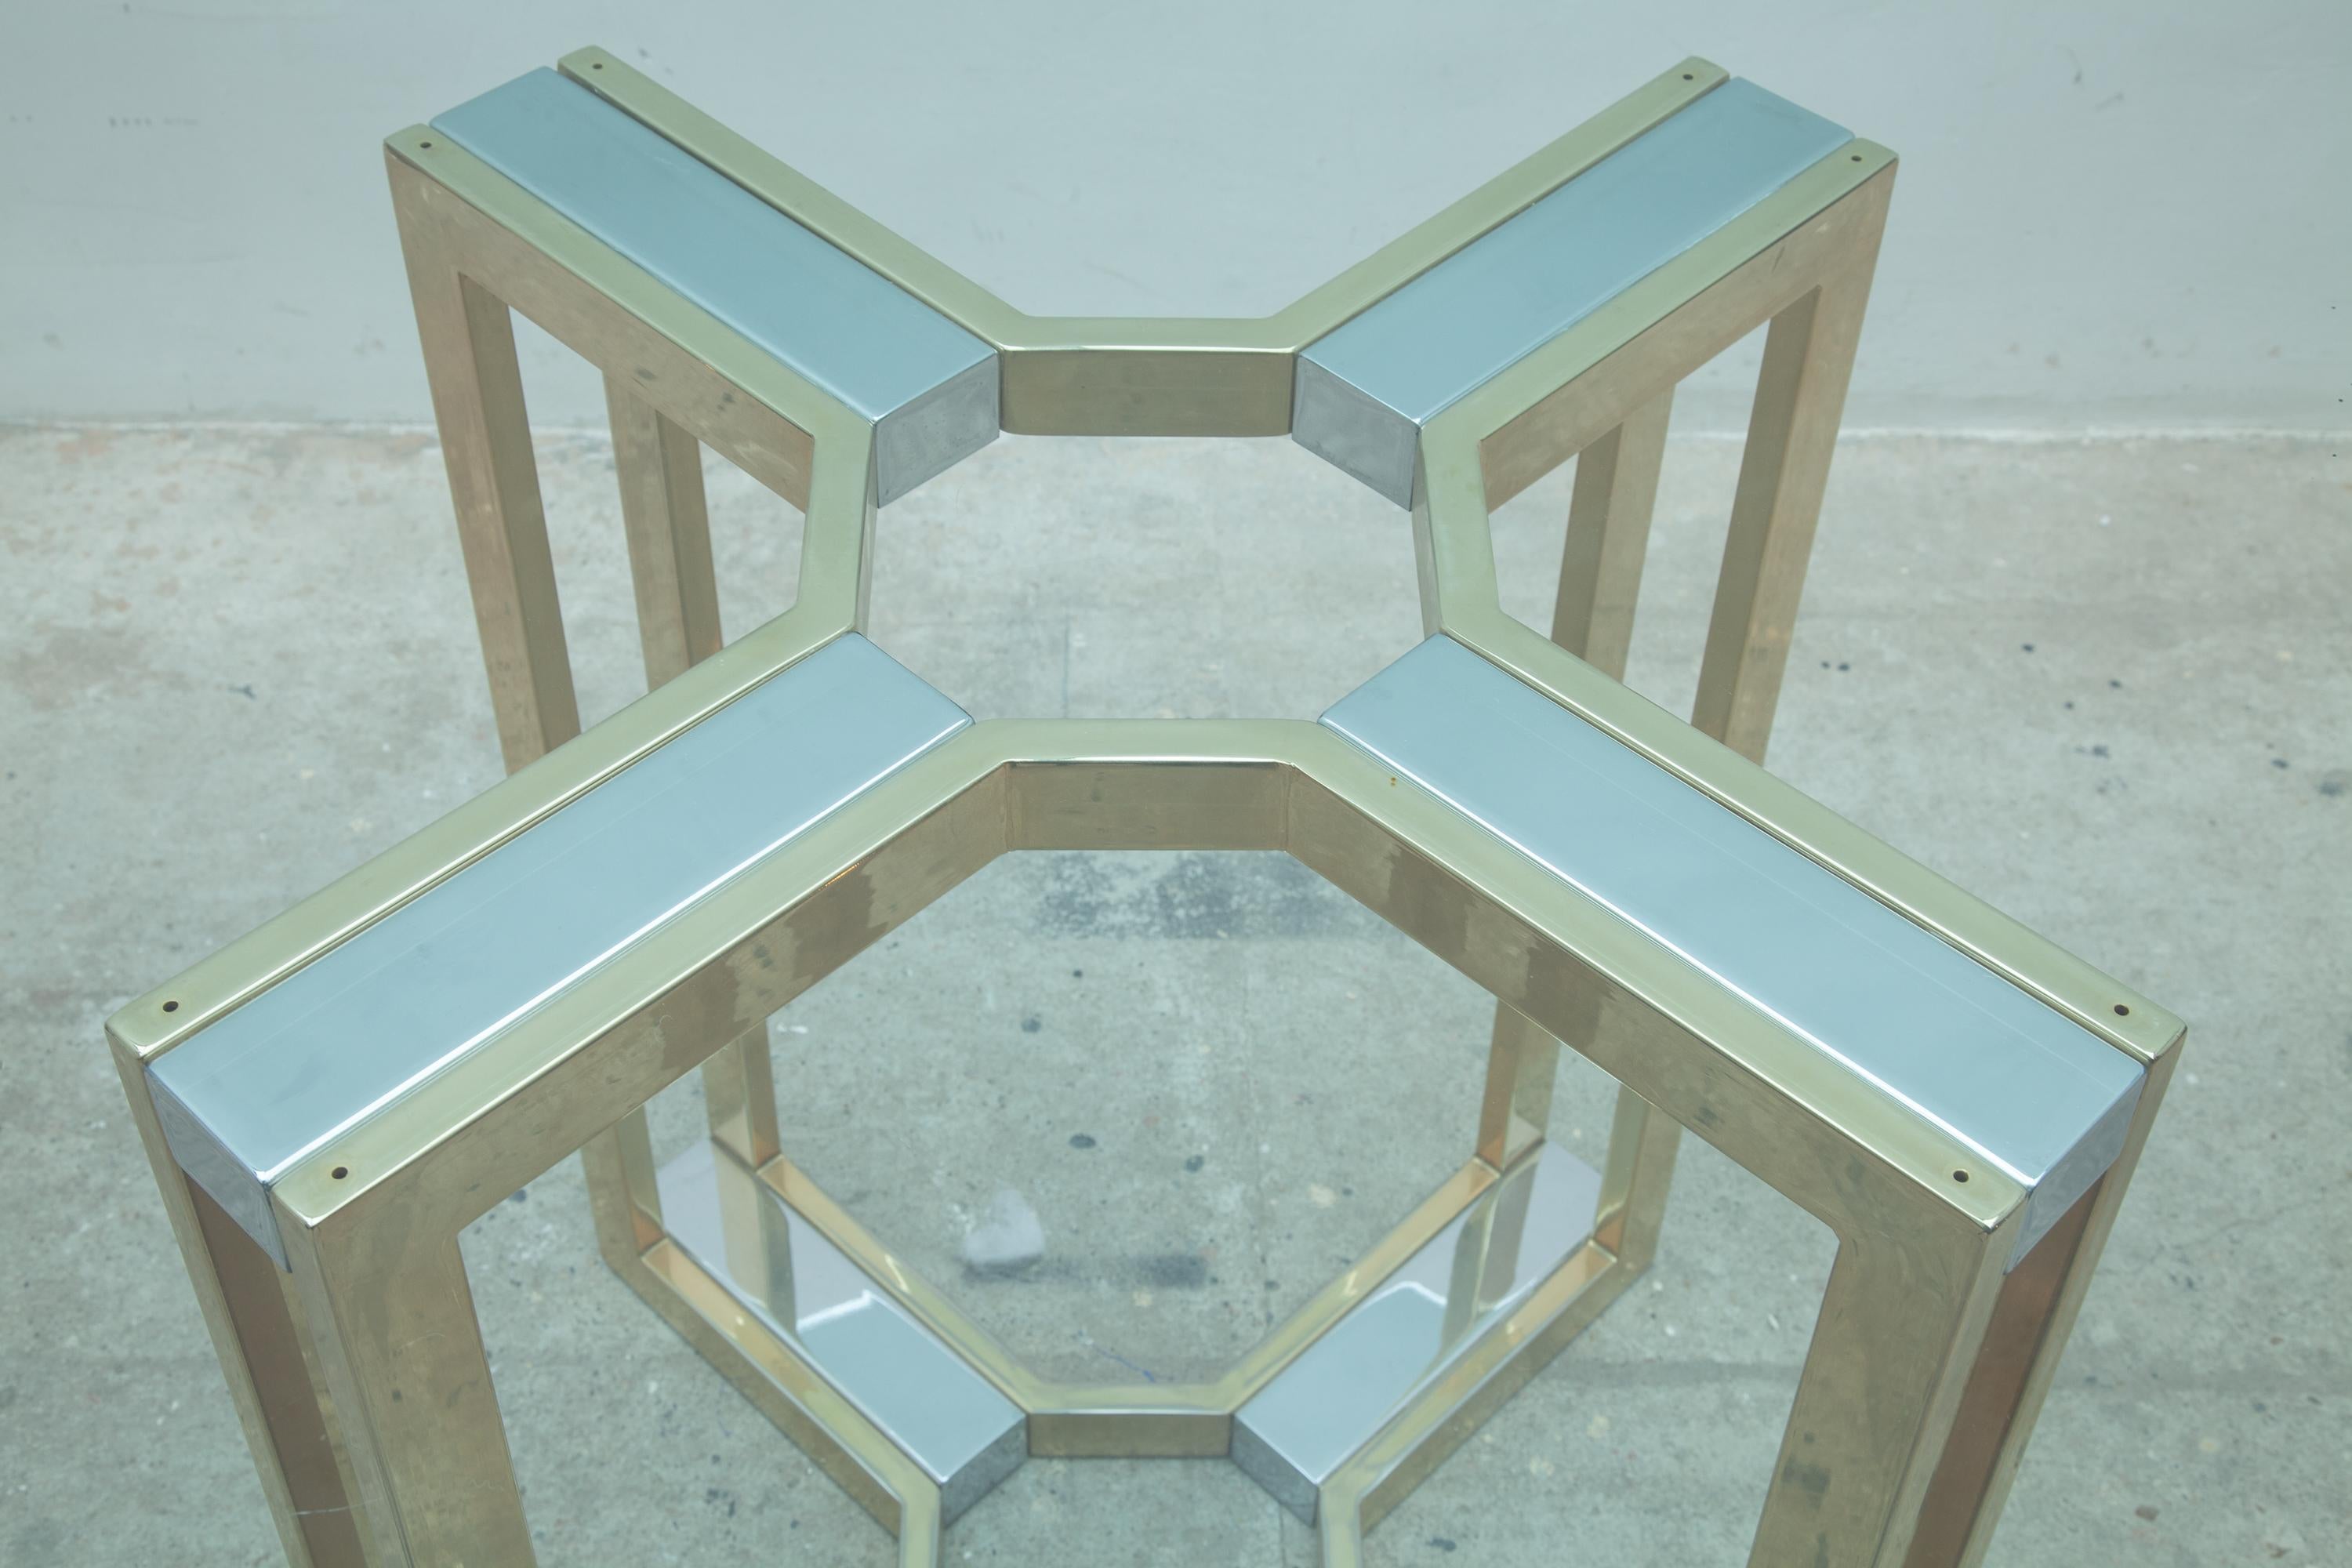 Table ronde centrale élégante en verre épais transparent, Romeo Rega, Italie, années 1970.
Impressionnante géométrie en laiton et acier plaqué chrome.
En parfait état.
Verre : diamètre de 140 cm, le verre est en très bon état, sans éclats ni